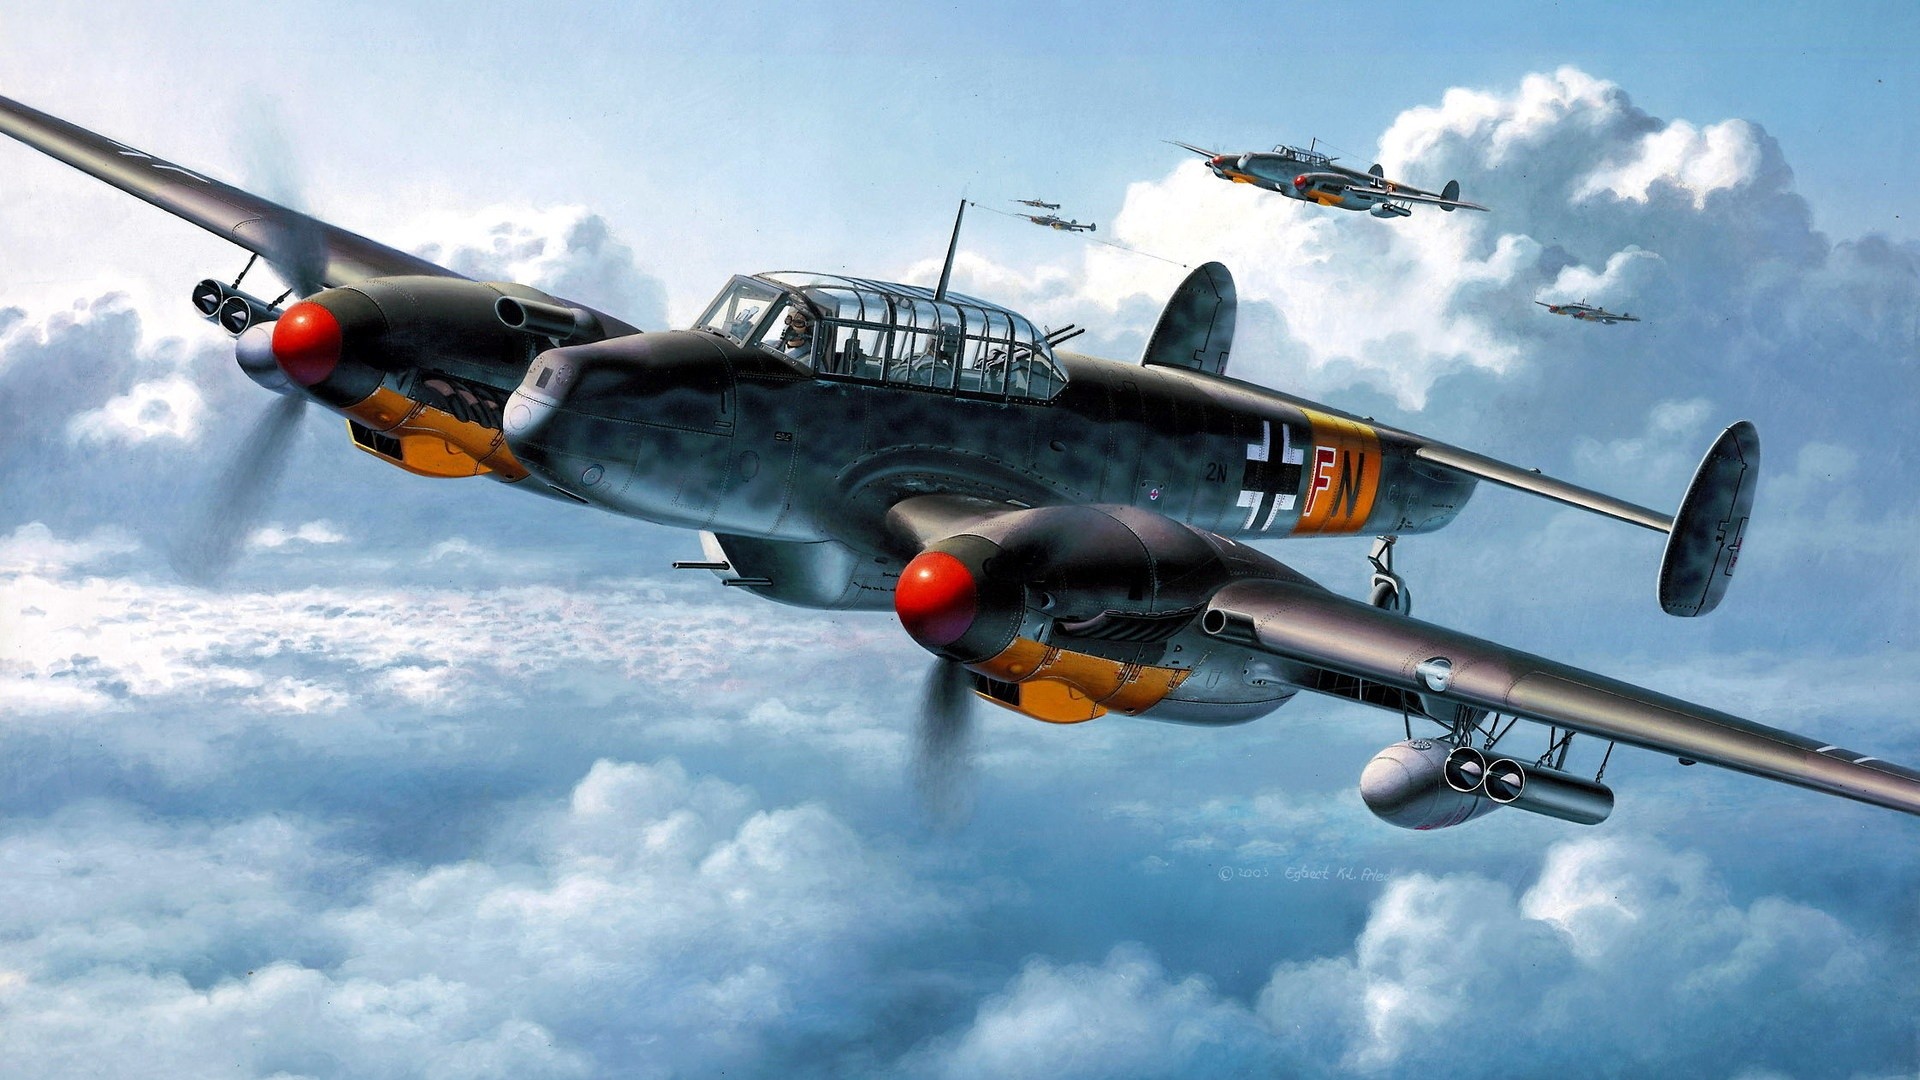 Messerschmitt Bf HD Wallpaper Background Image